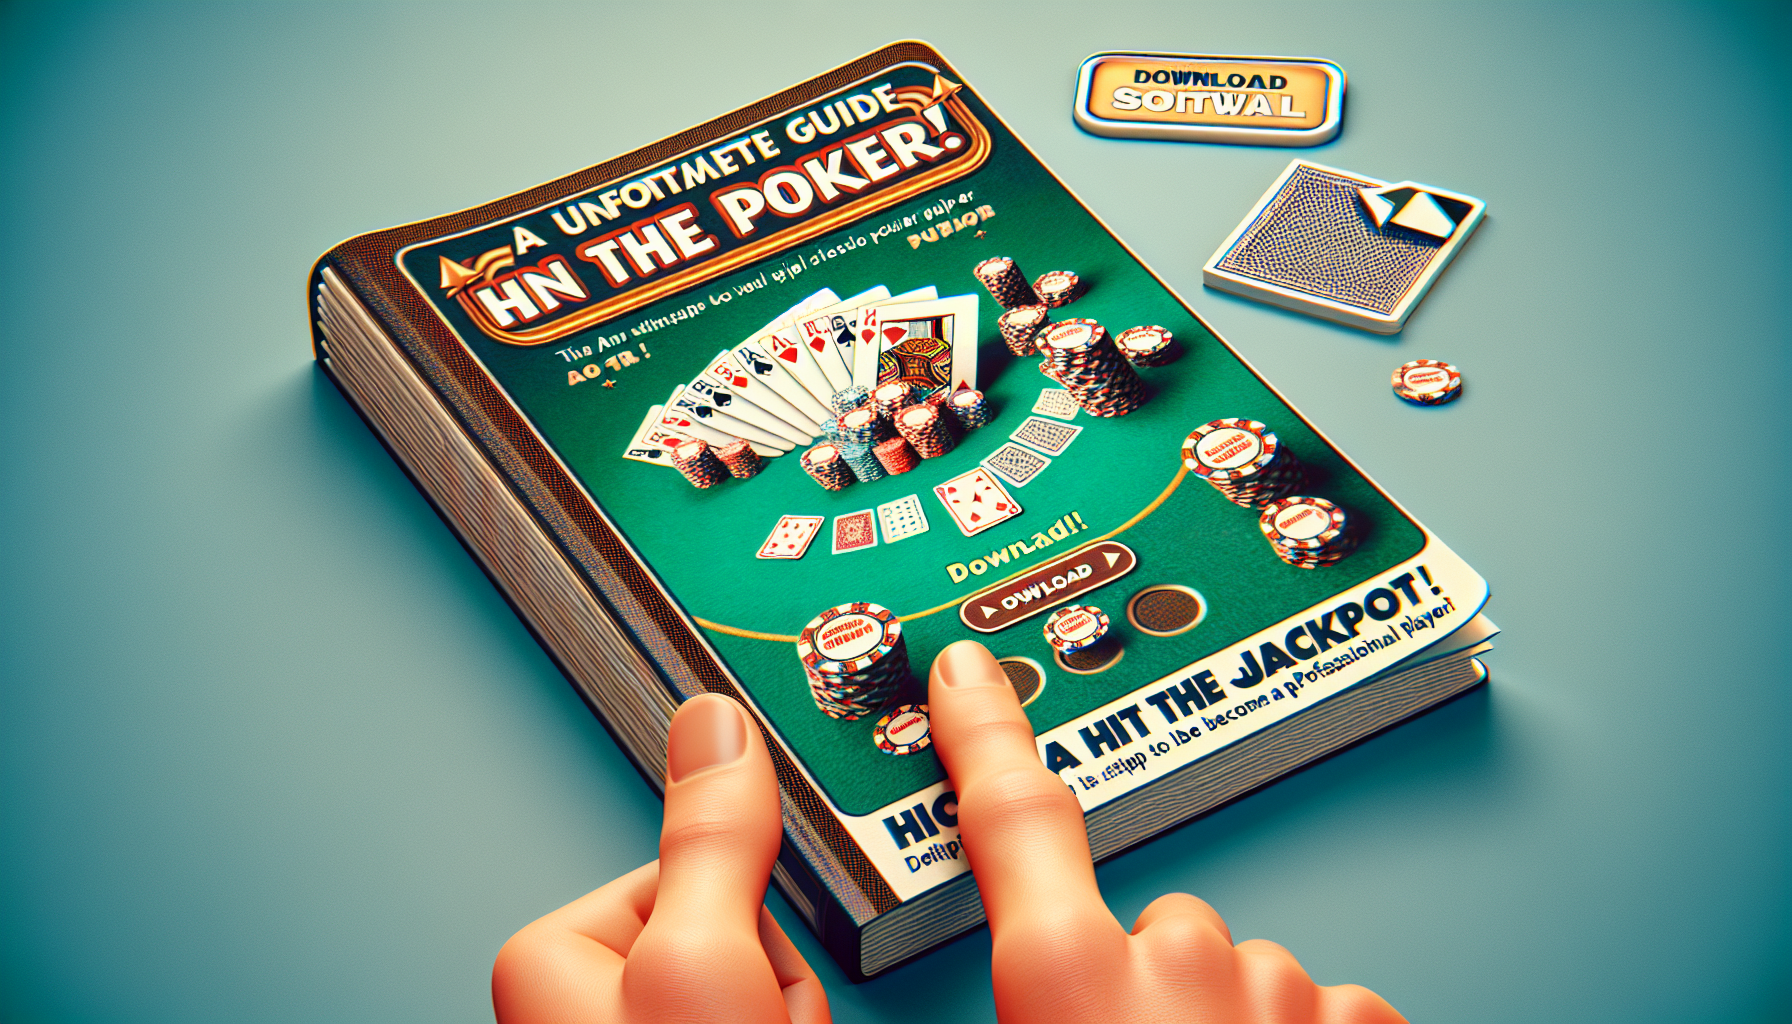 découvrez comment télécharger et installer le jeu de poker sur votre appareil grâce à notre guide complet.